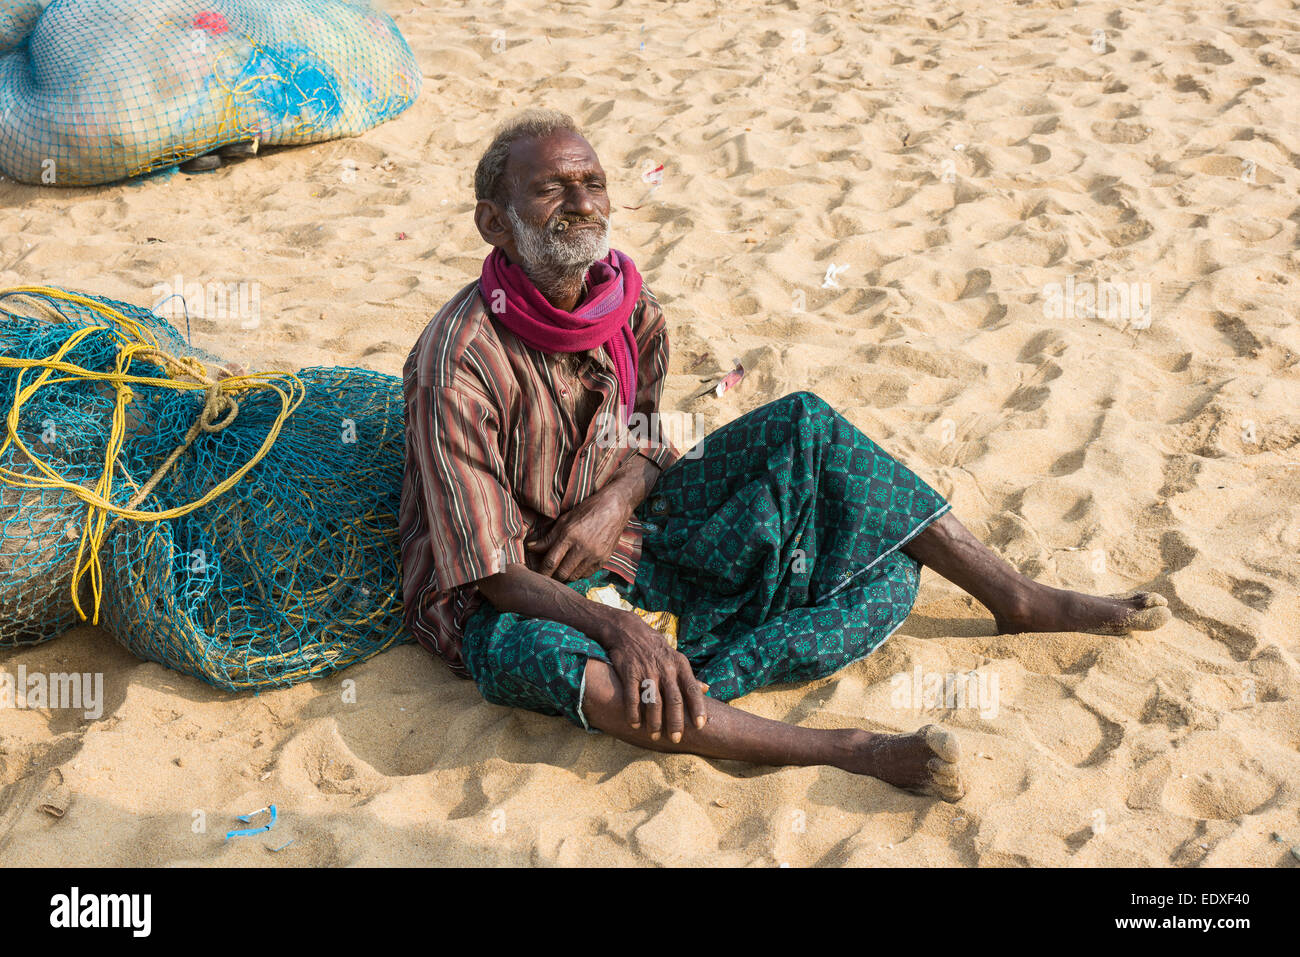 CHENNAI, India - 10 febbraio: un misterioso uomo si siede sulla sabbia vicino alla spiaggia di Marina il 10 febbraio 2013 a Chennai, India Foto Stock